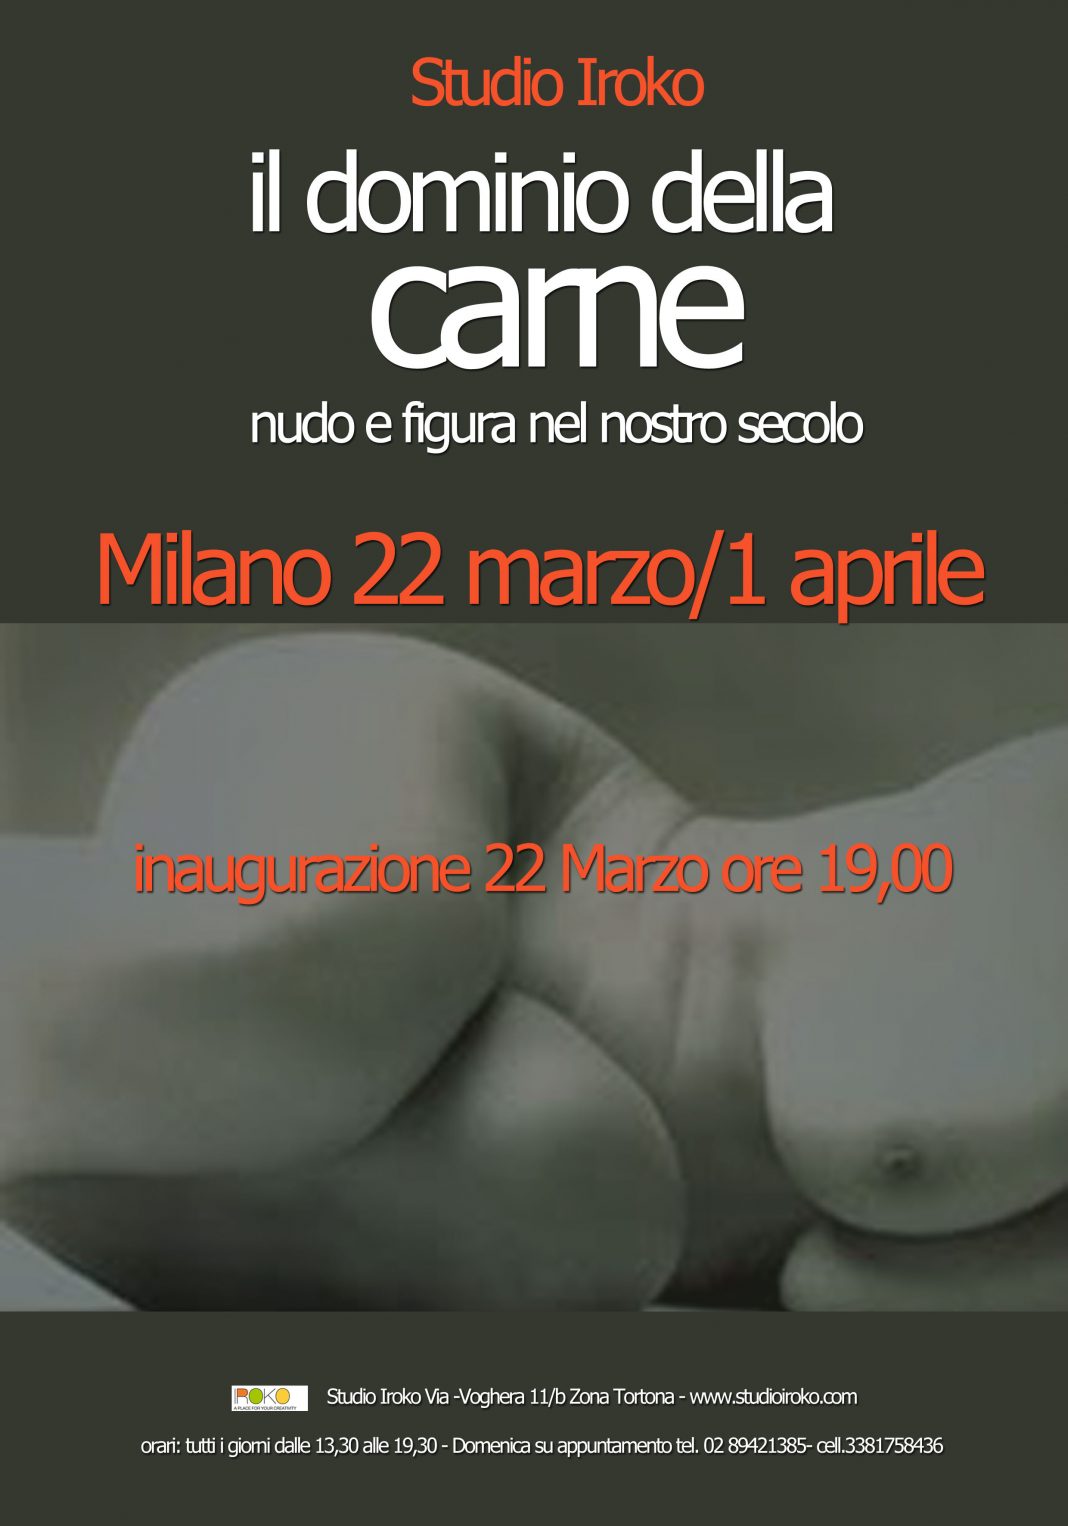 Il Dominio della Carnehttps://www.exibart.com/repository/media/eventi/2012/03/il-dominio-della-carne-1-1068x1526.jpg